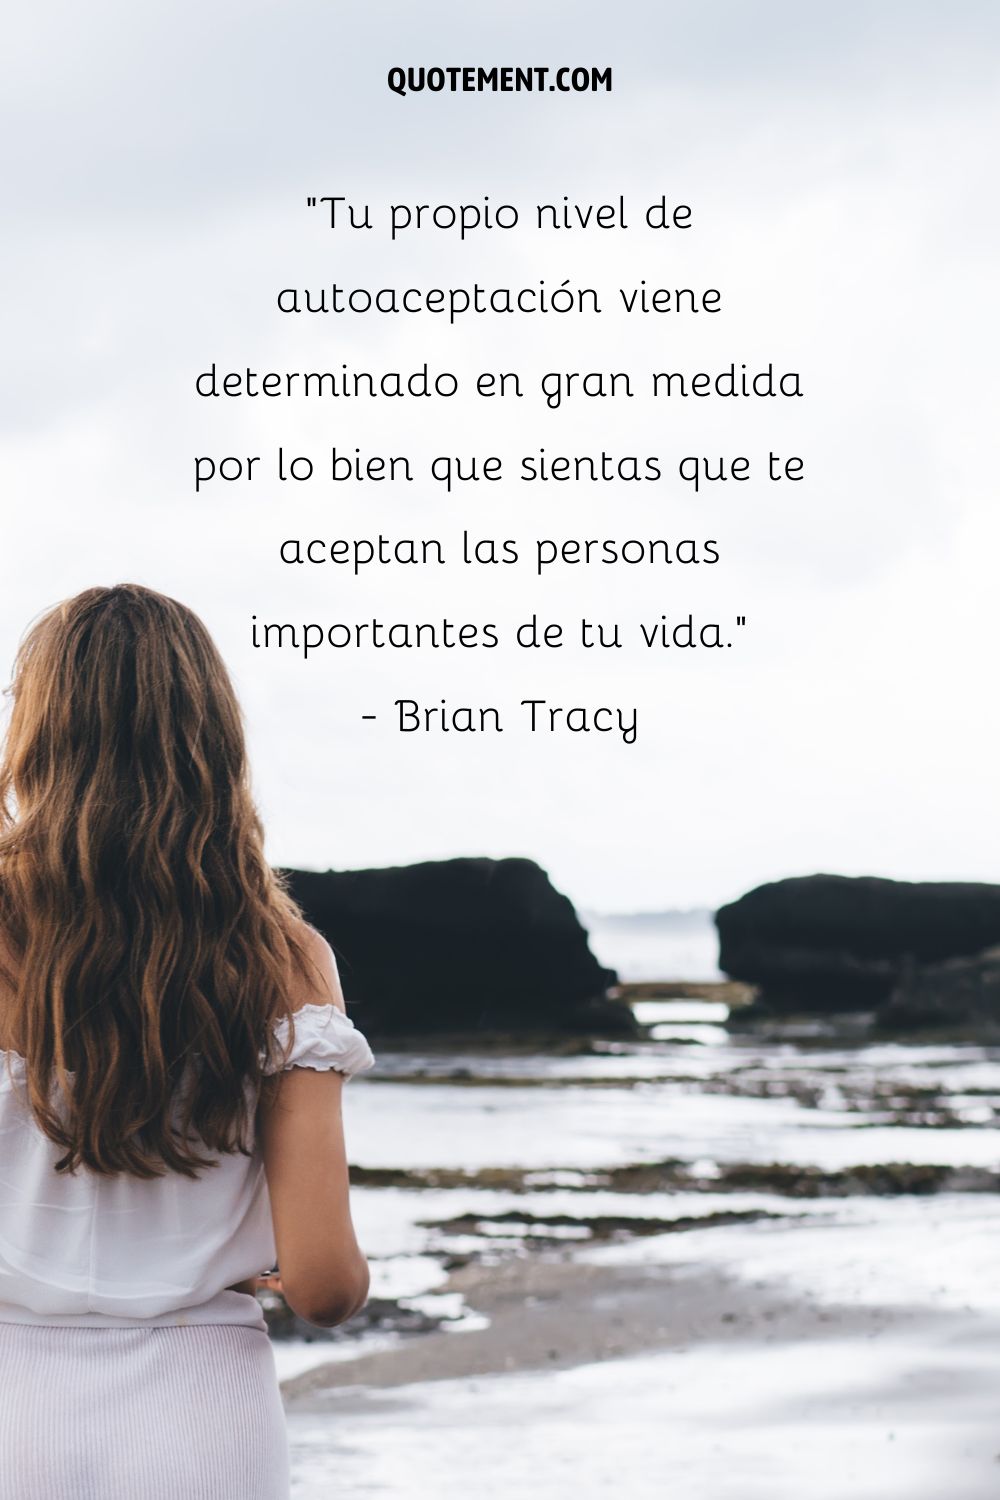 "Tu propio nivel de autoaceptación está determinado en gran medida por lo bien que sientes que te aceptan las personas importantes de tu vida". - Brian Tracy